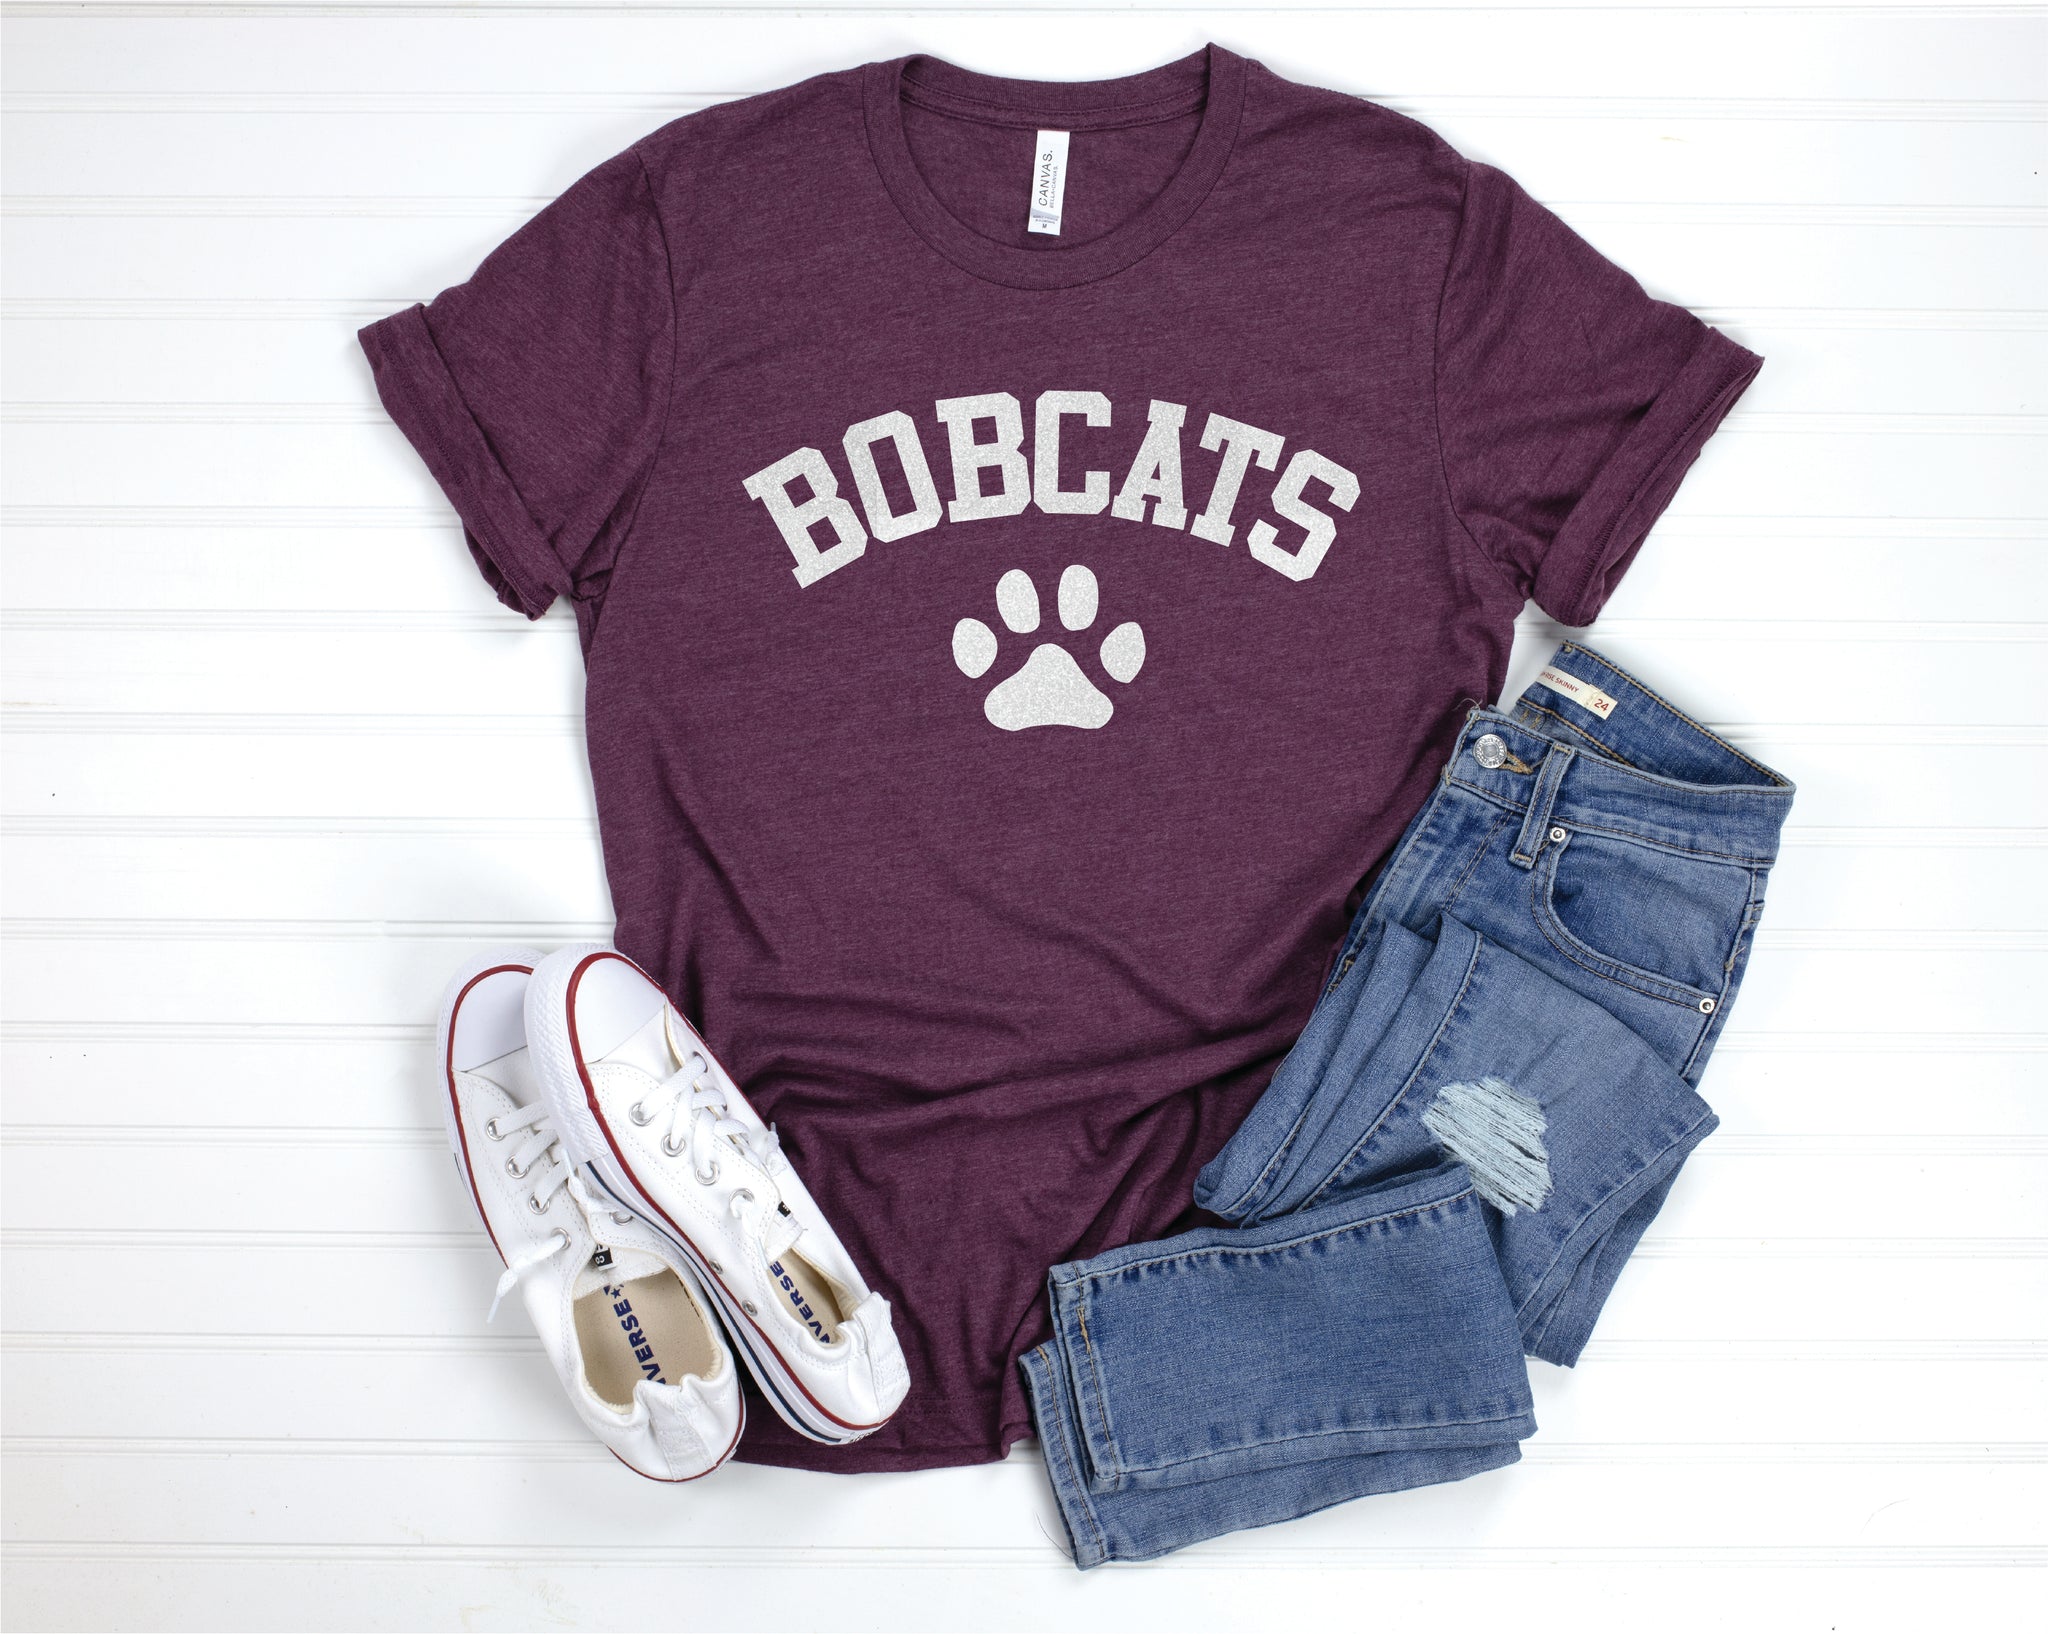 Bobcats Paw - Heather Maroon